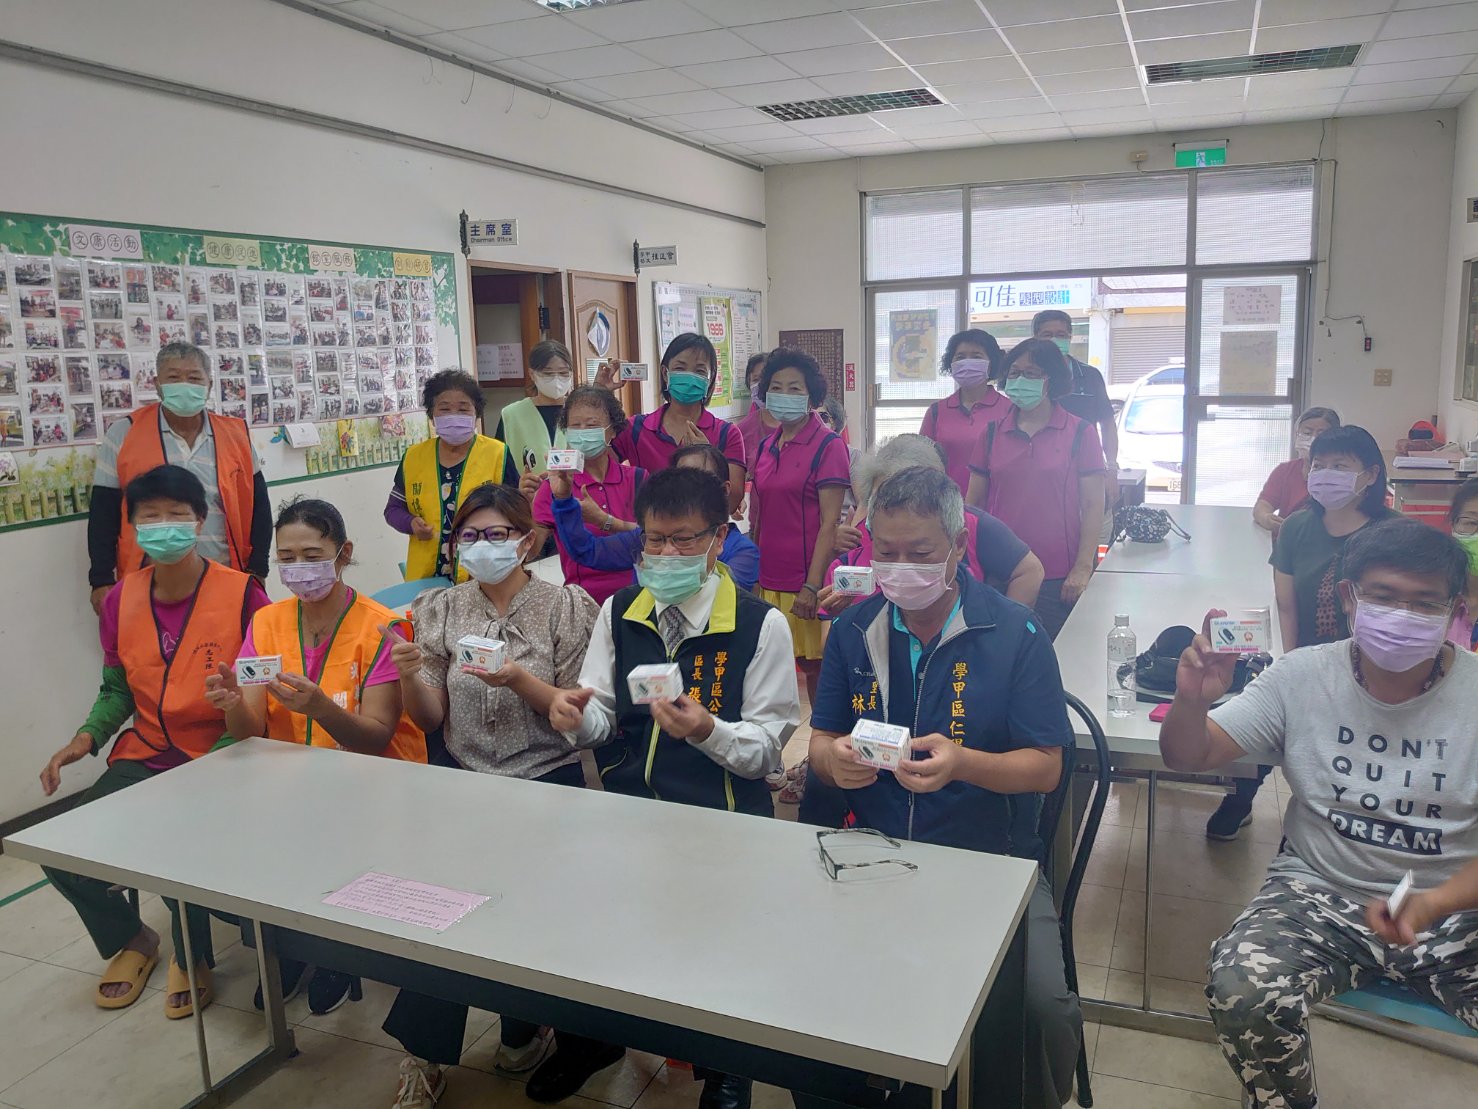 學甲區心得藥局藥師邱媺娟捐贈9台台灣製血氧機給學甲區9個關懷據點